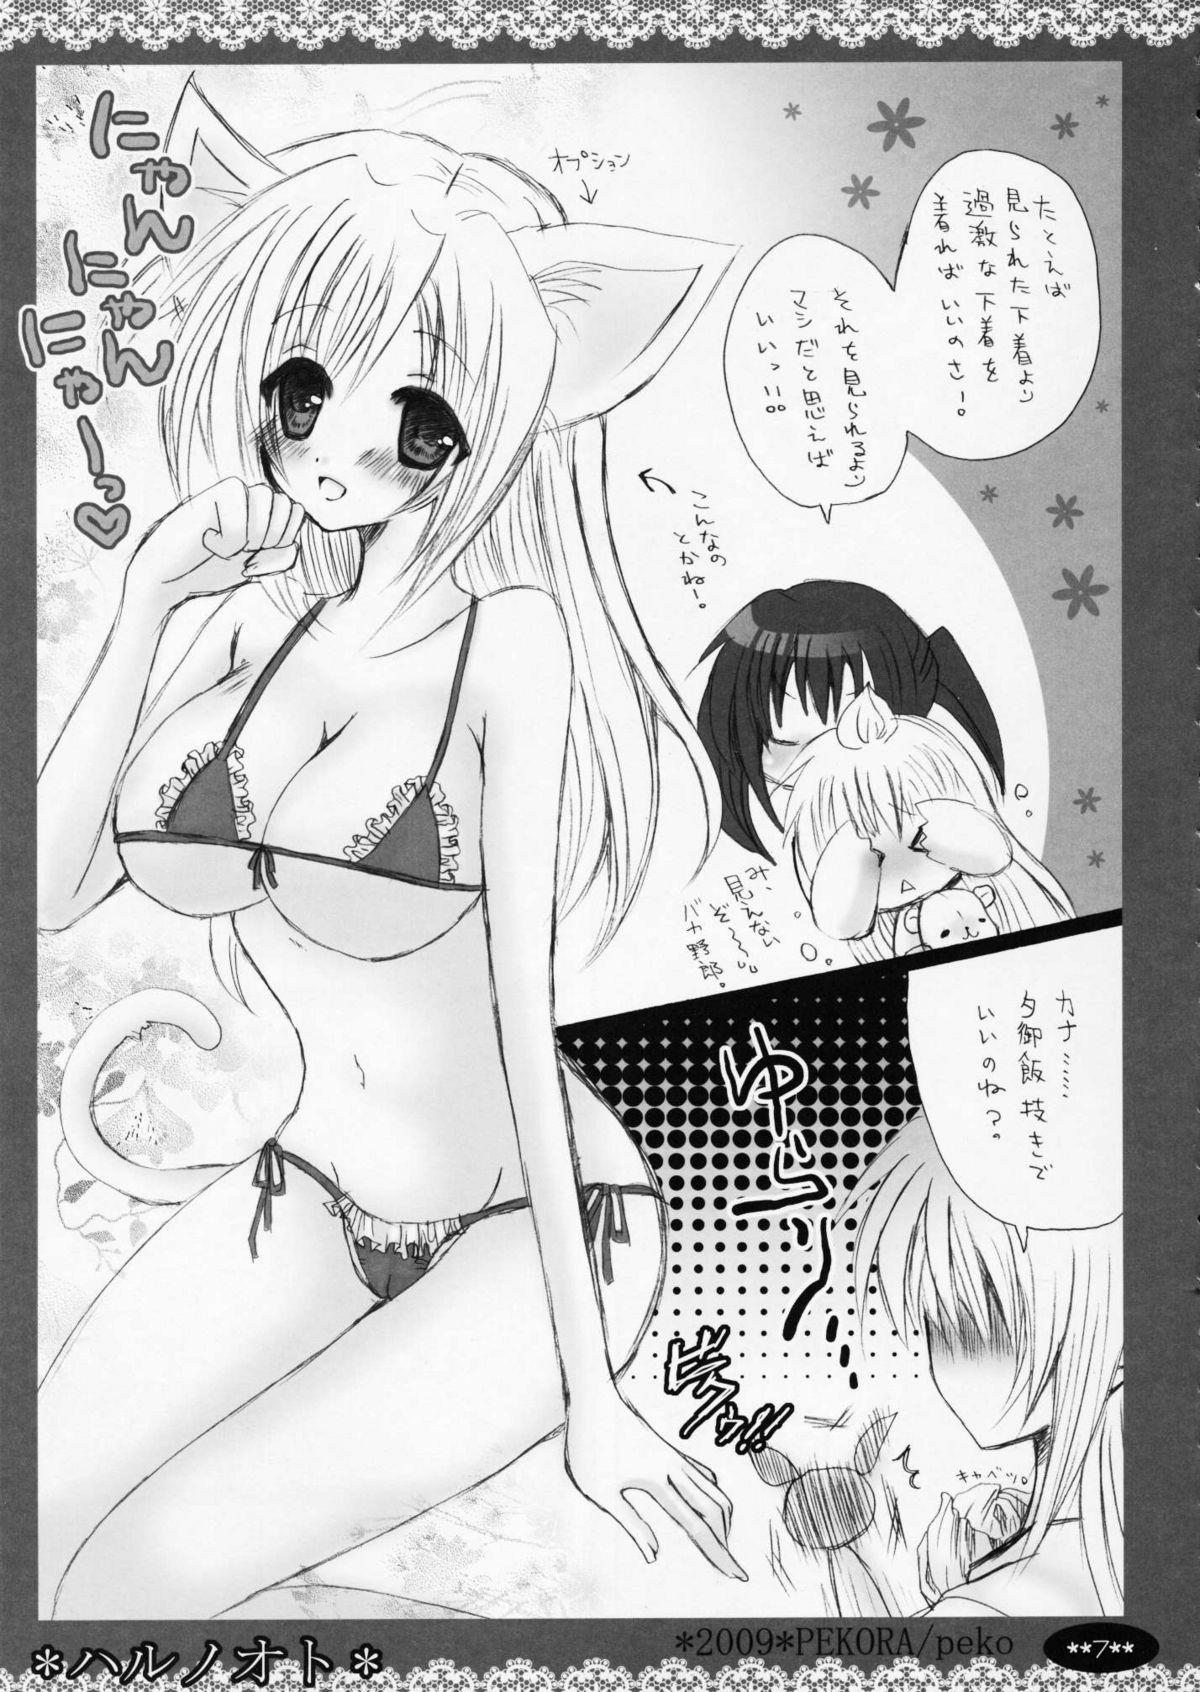 Flaca Haru no Oto - Minami-ke Nylons - Page 7